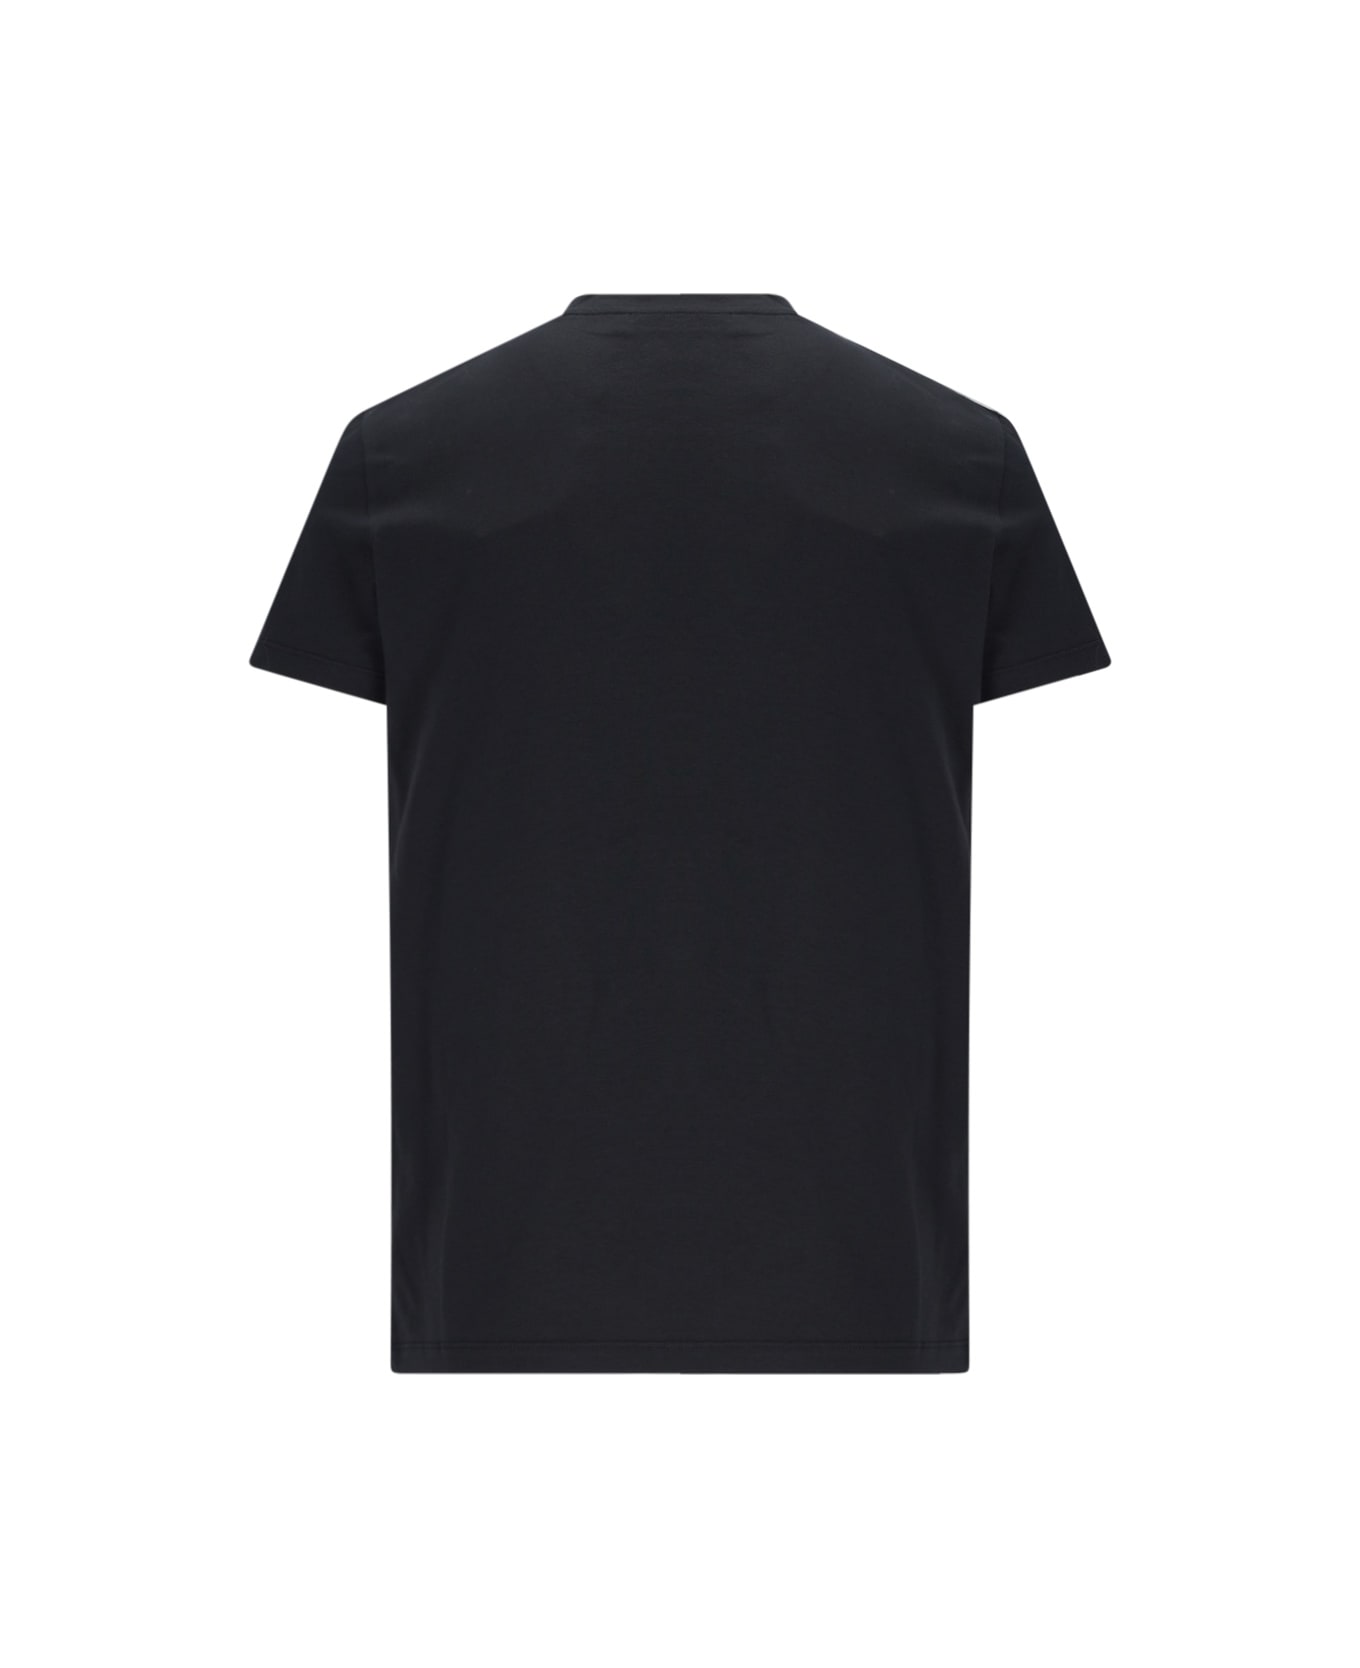 Balmain Logo T-shirt - Black  